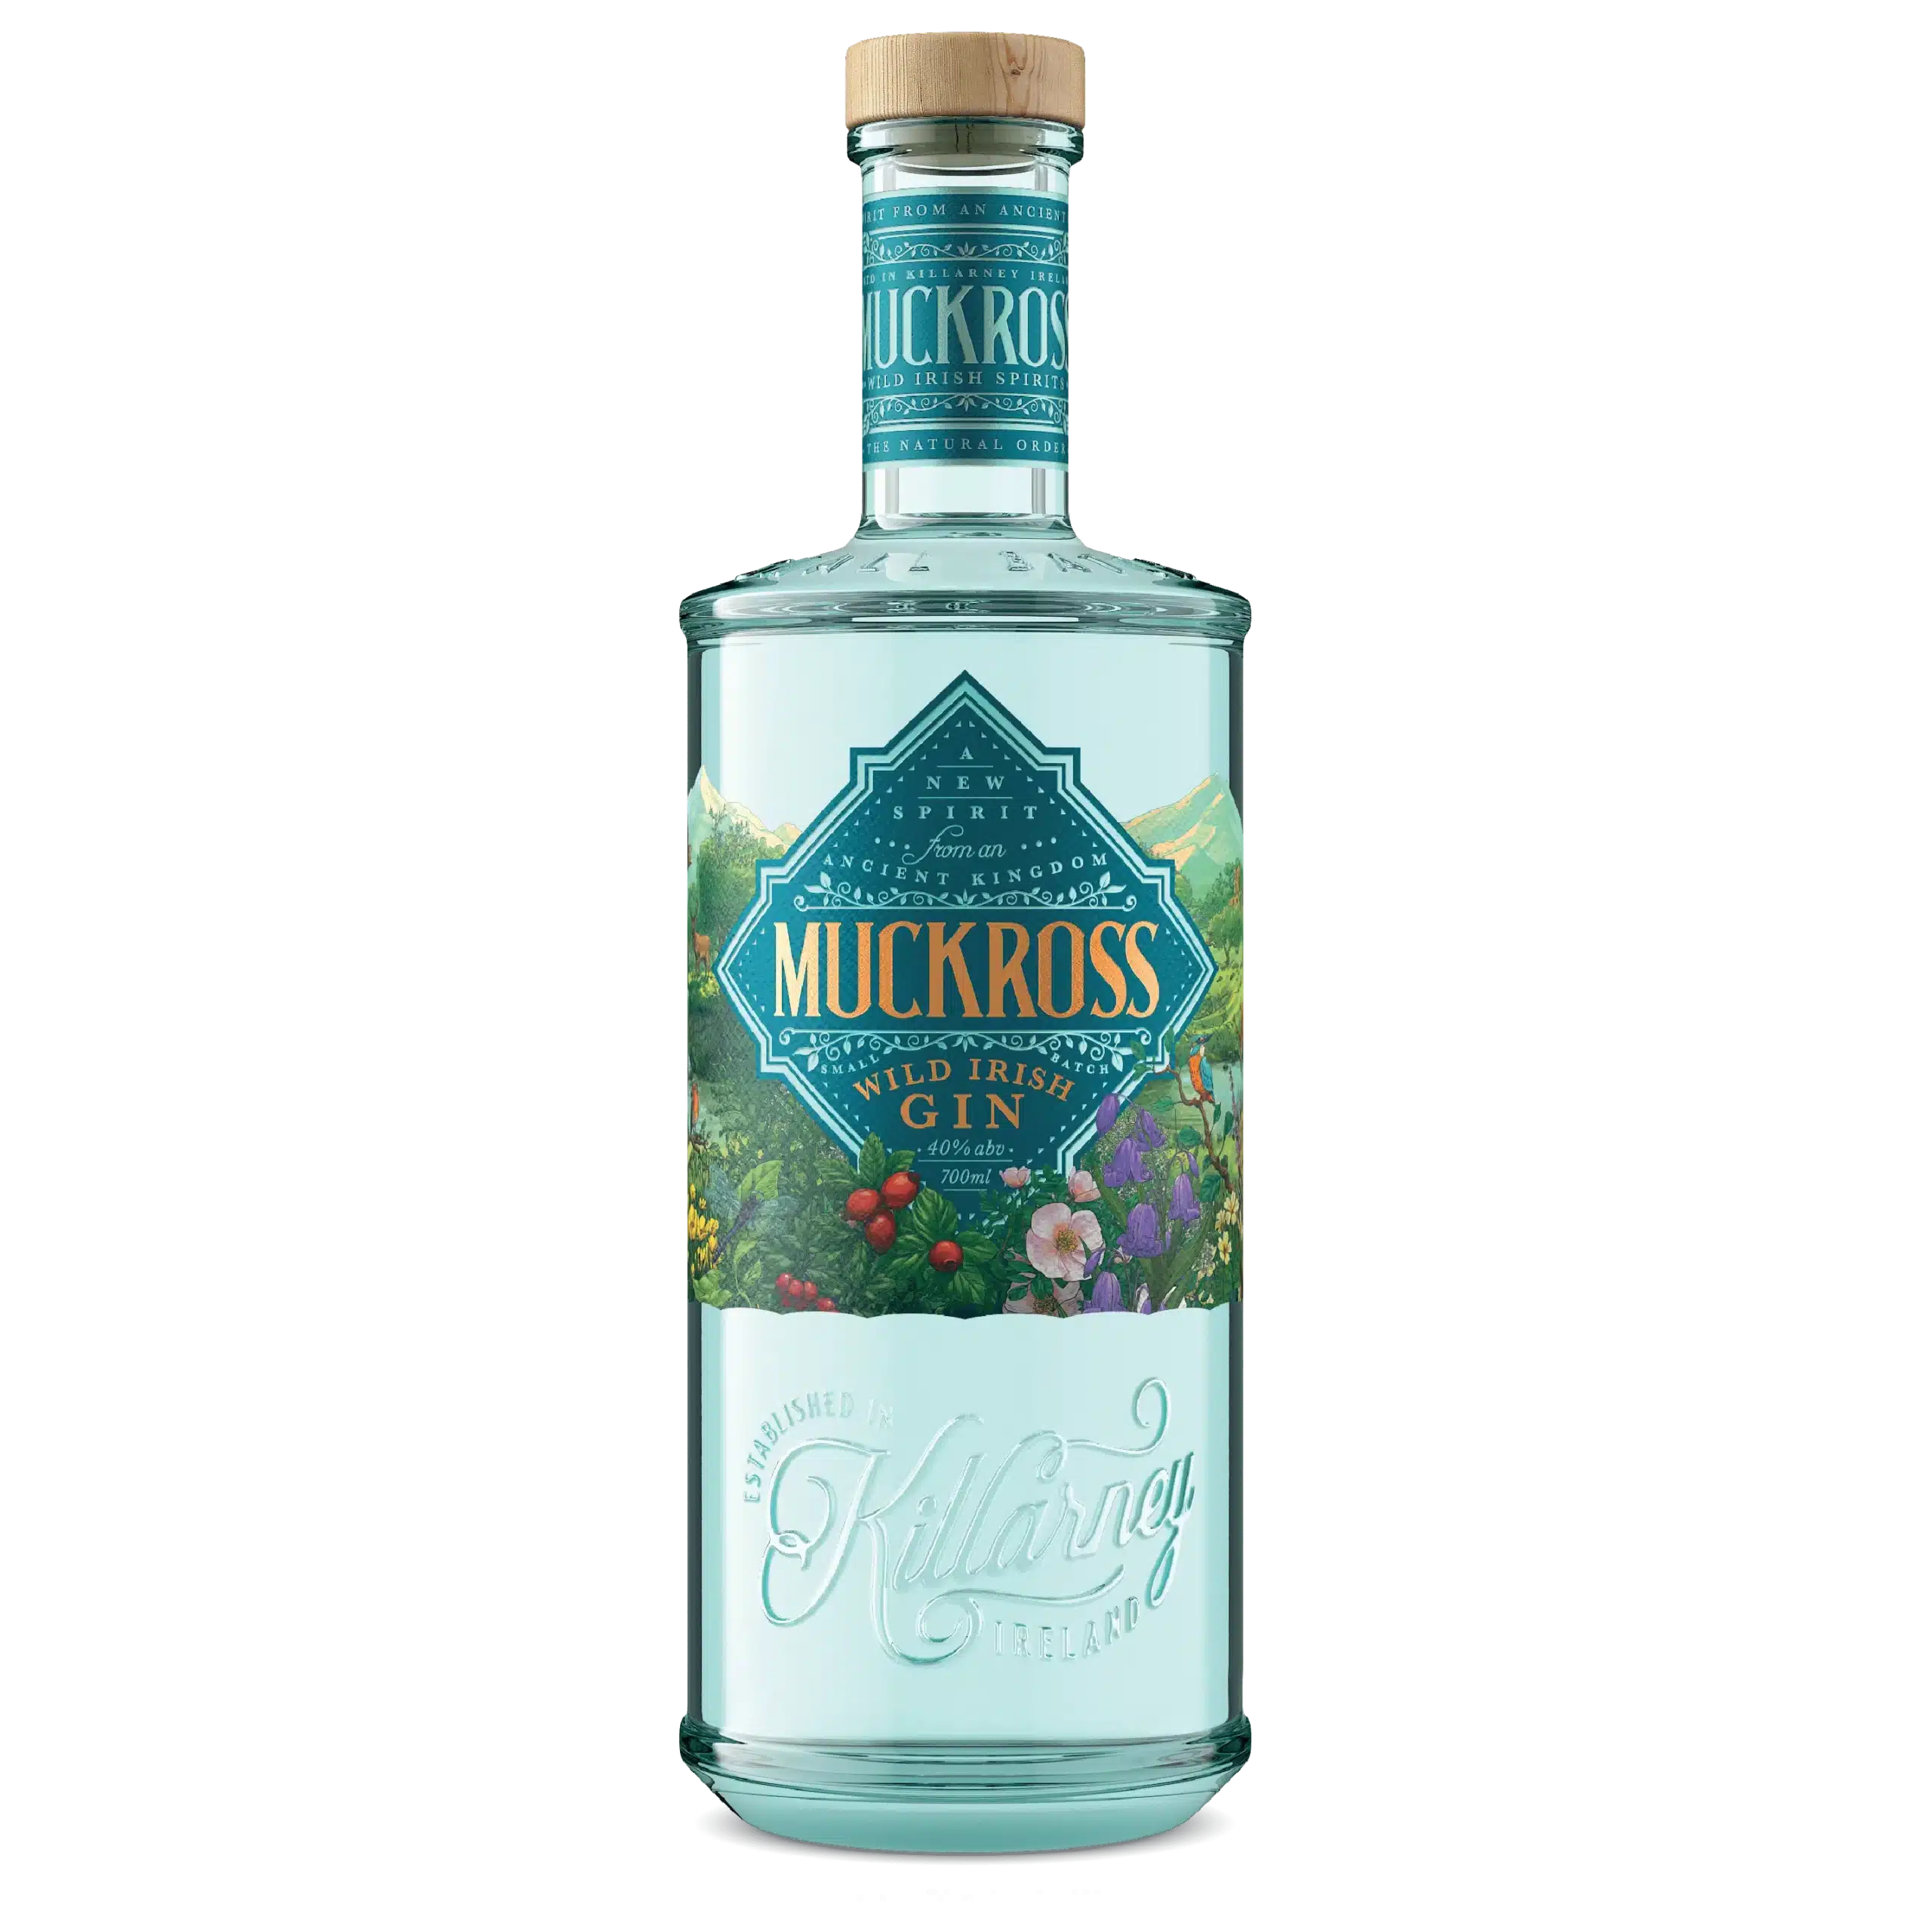 Buy Muckross Irish Gin Wild | Muckross 70cl Gin Store Irish